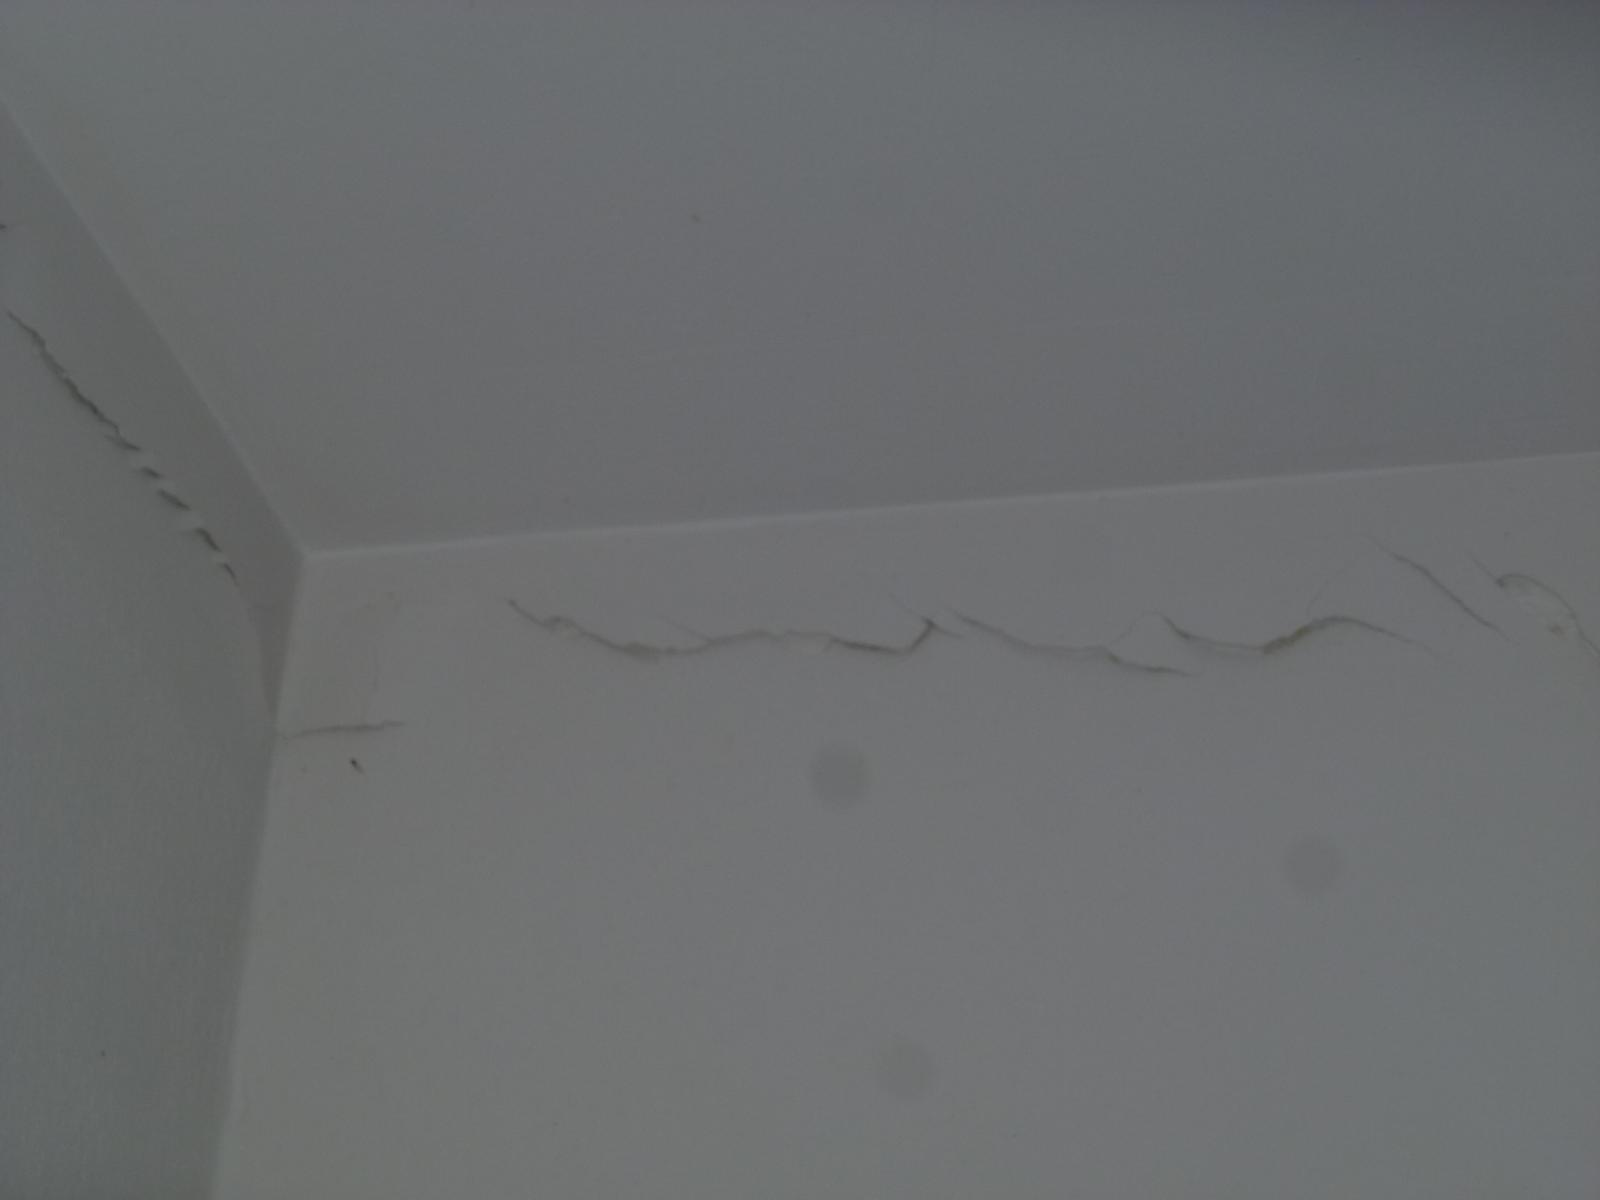 Bande placo joint plafond mur craquelle